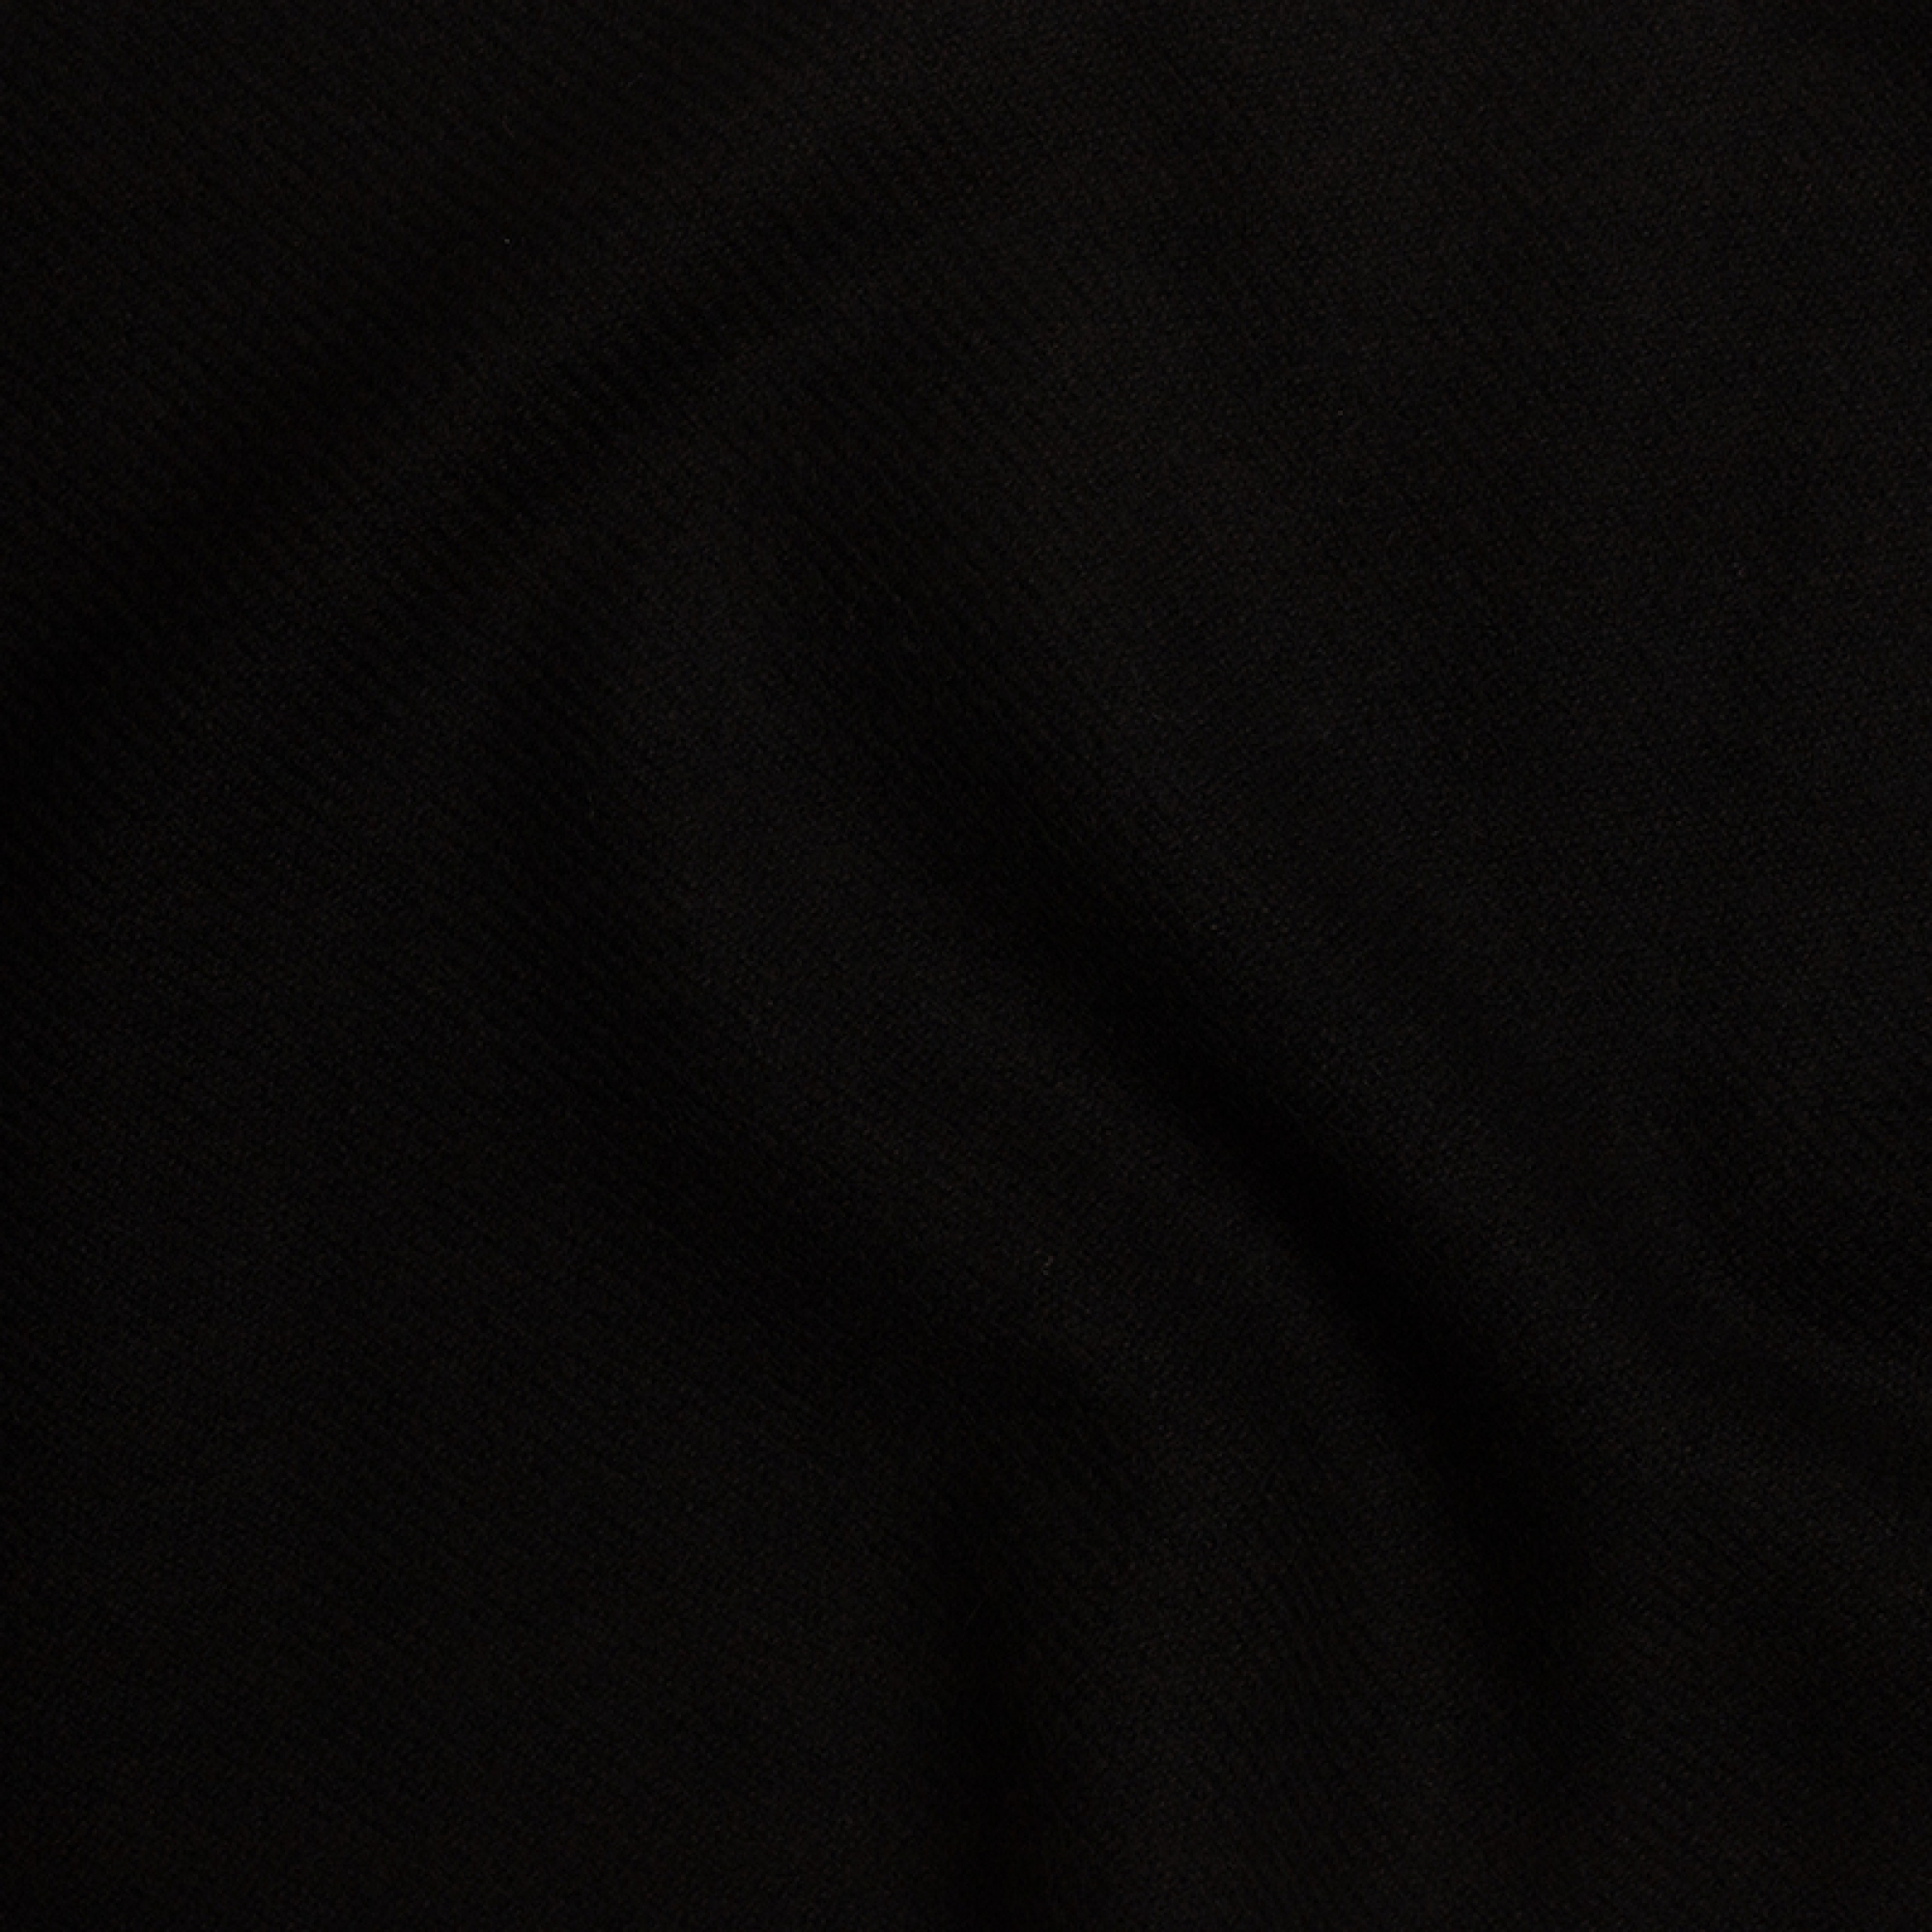 Cachemire accessoires couvertures plaids toodoo plain l 220 x 220 noir 220x220cm